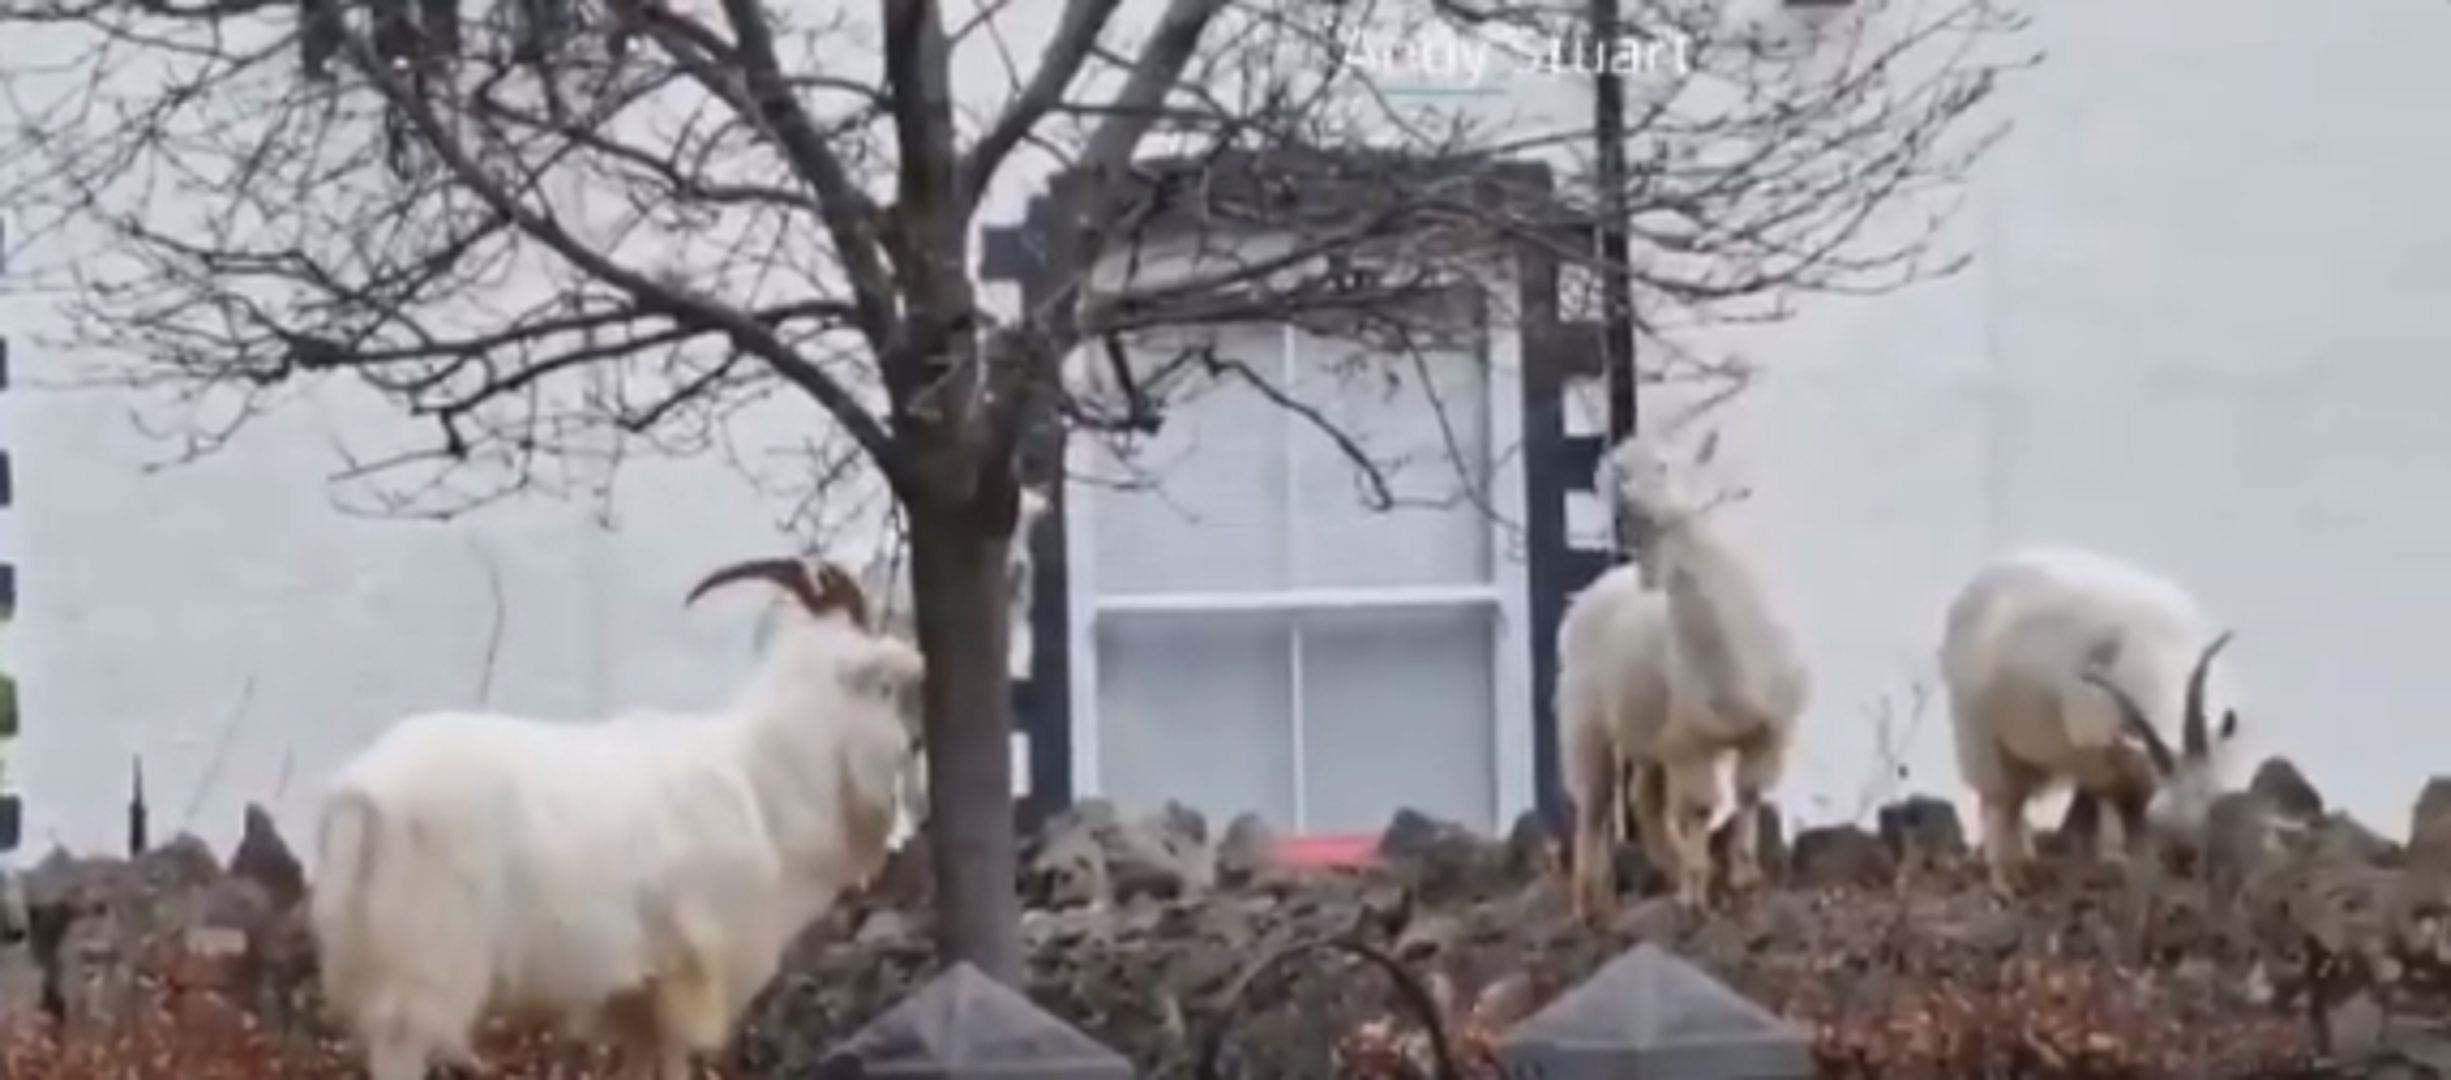 Planinske koze spustile su se kako bi pronašle svježu hranu u malom gradiću u Walesu.